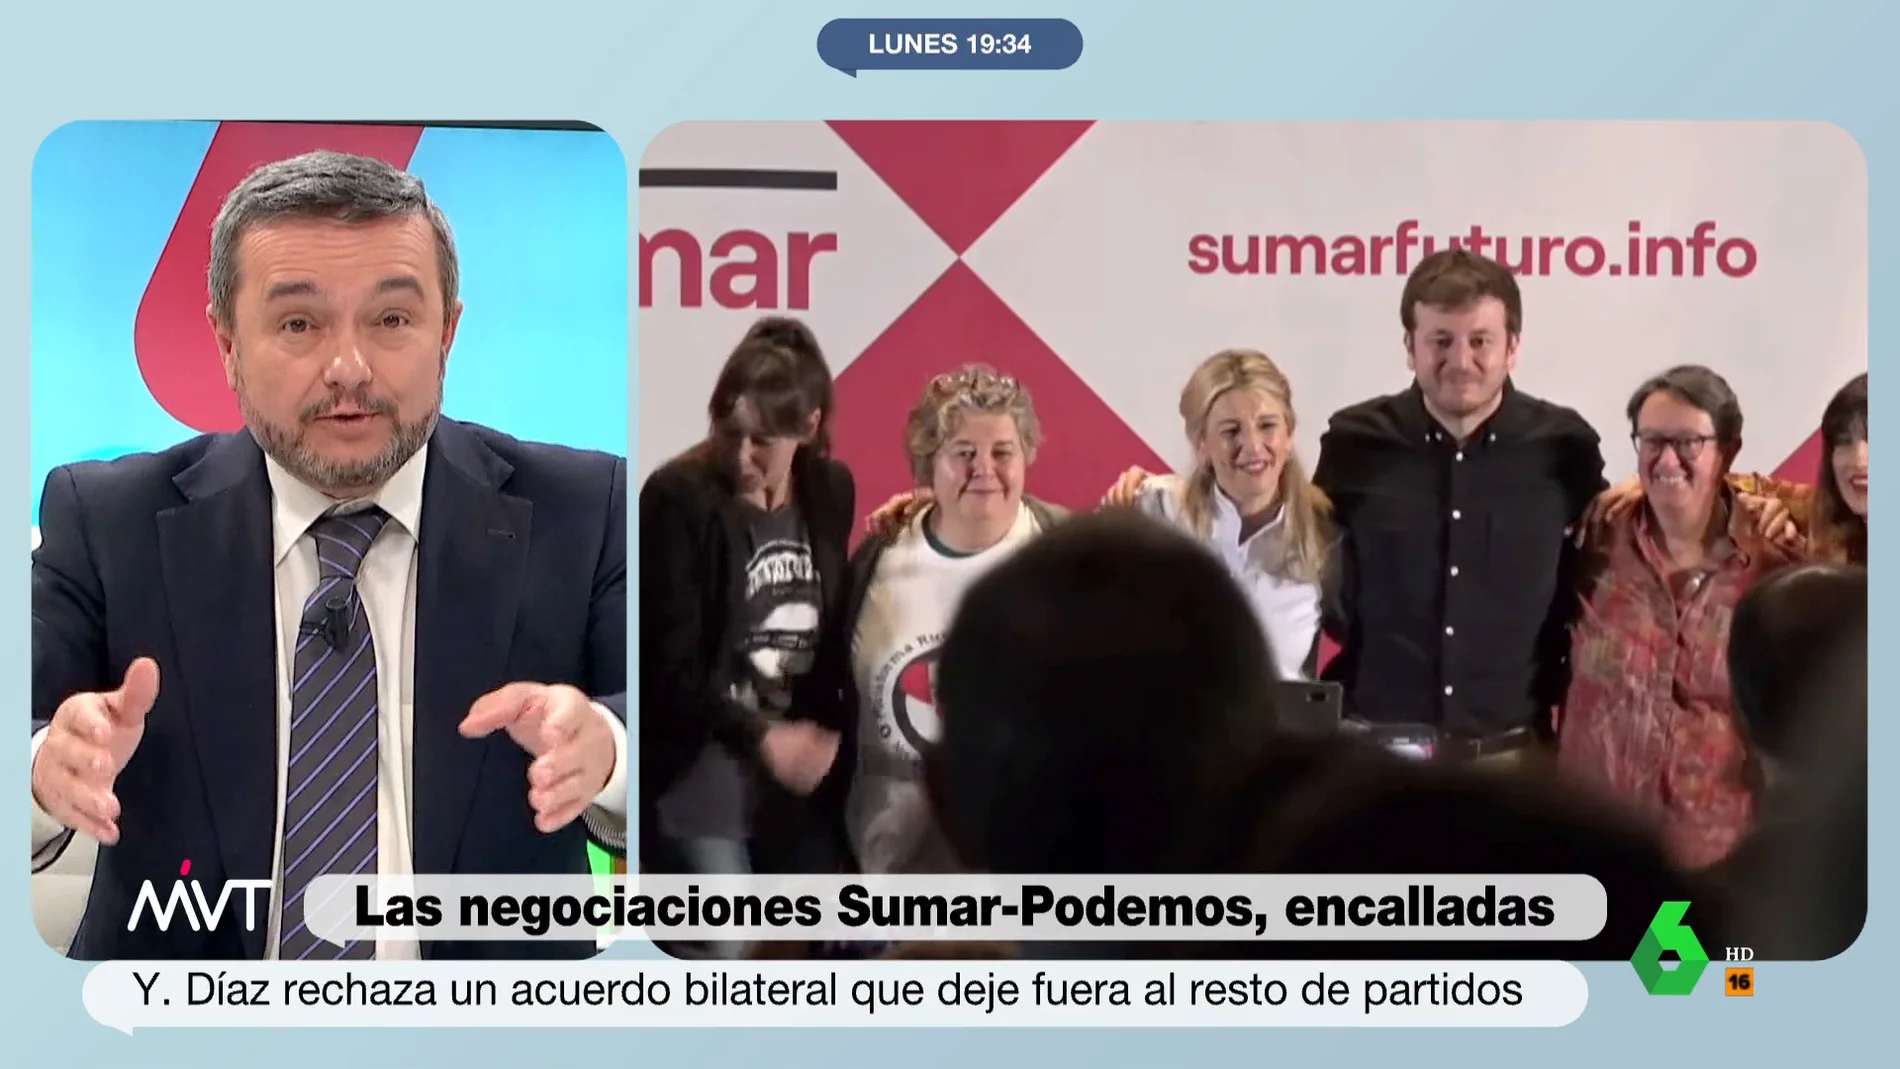 El rotundo mensaje de Chema Crespo por la falta de acuerdo entre Podemos y Sumar